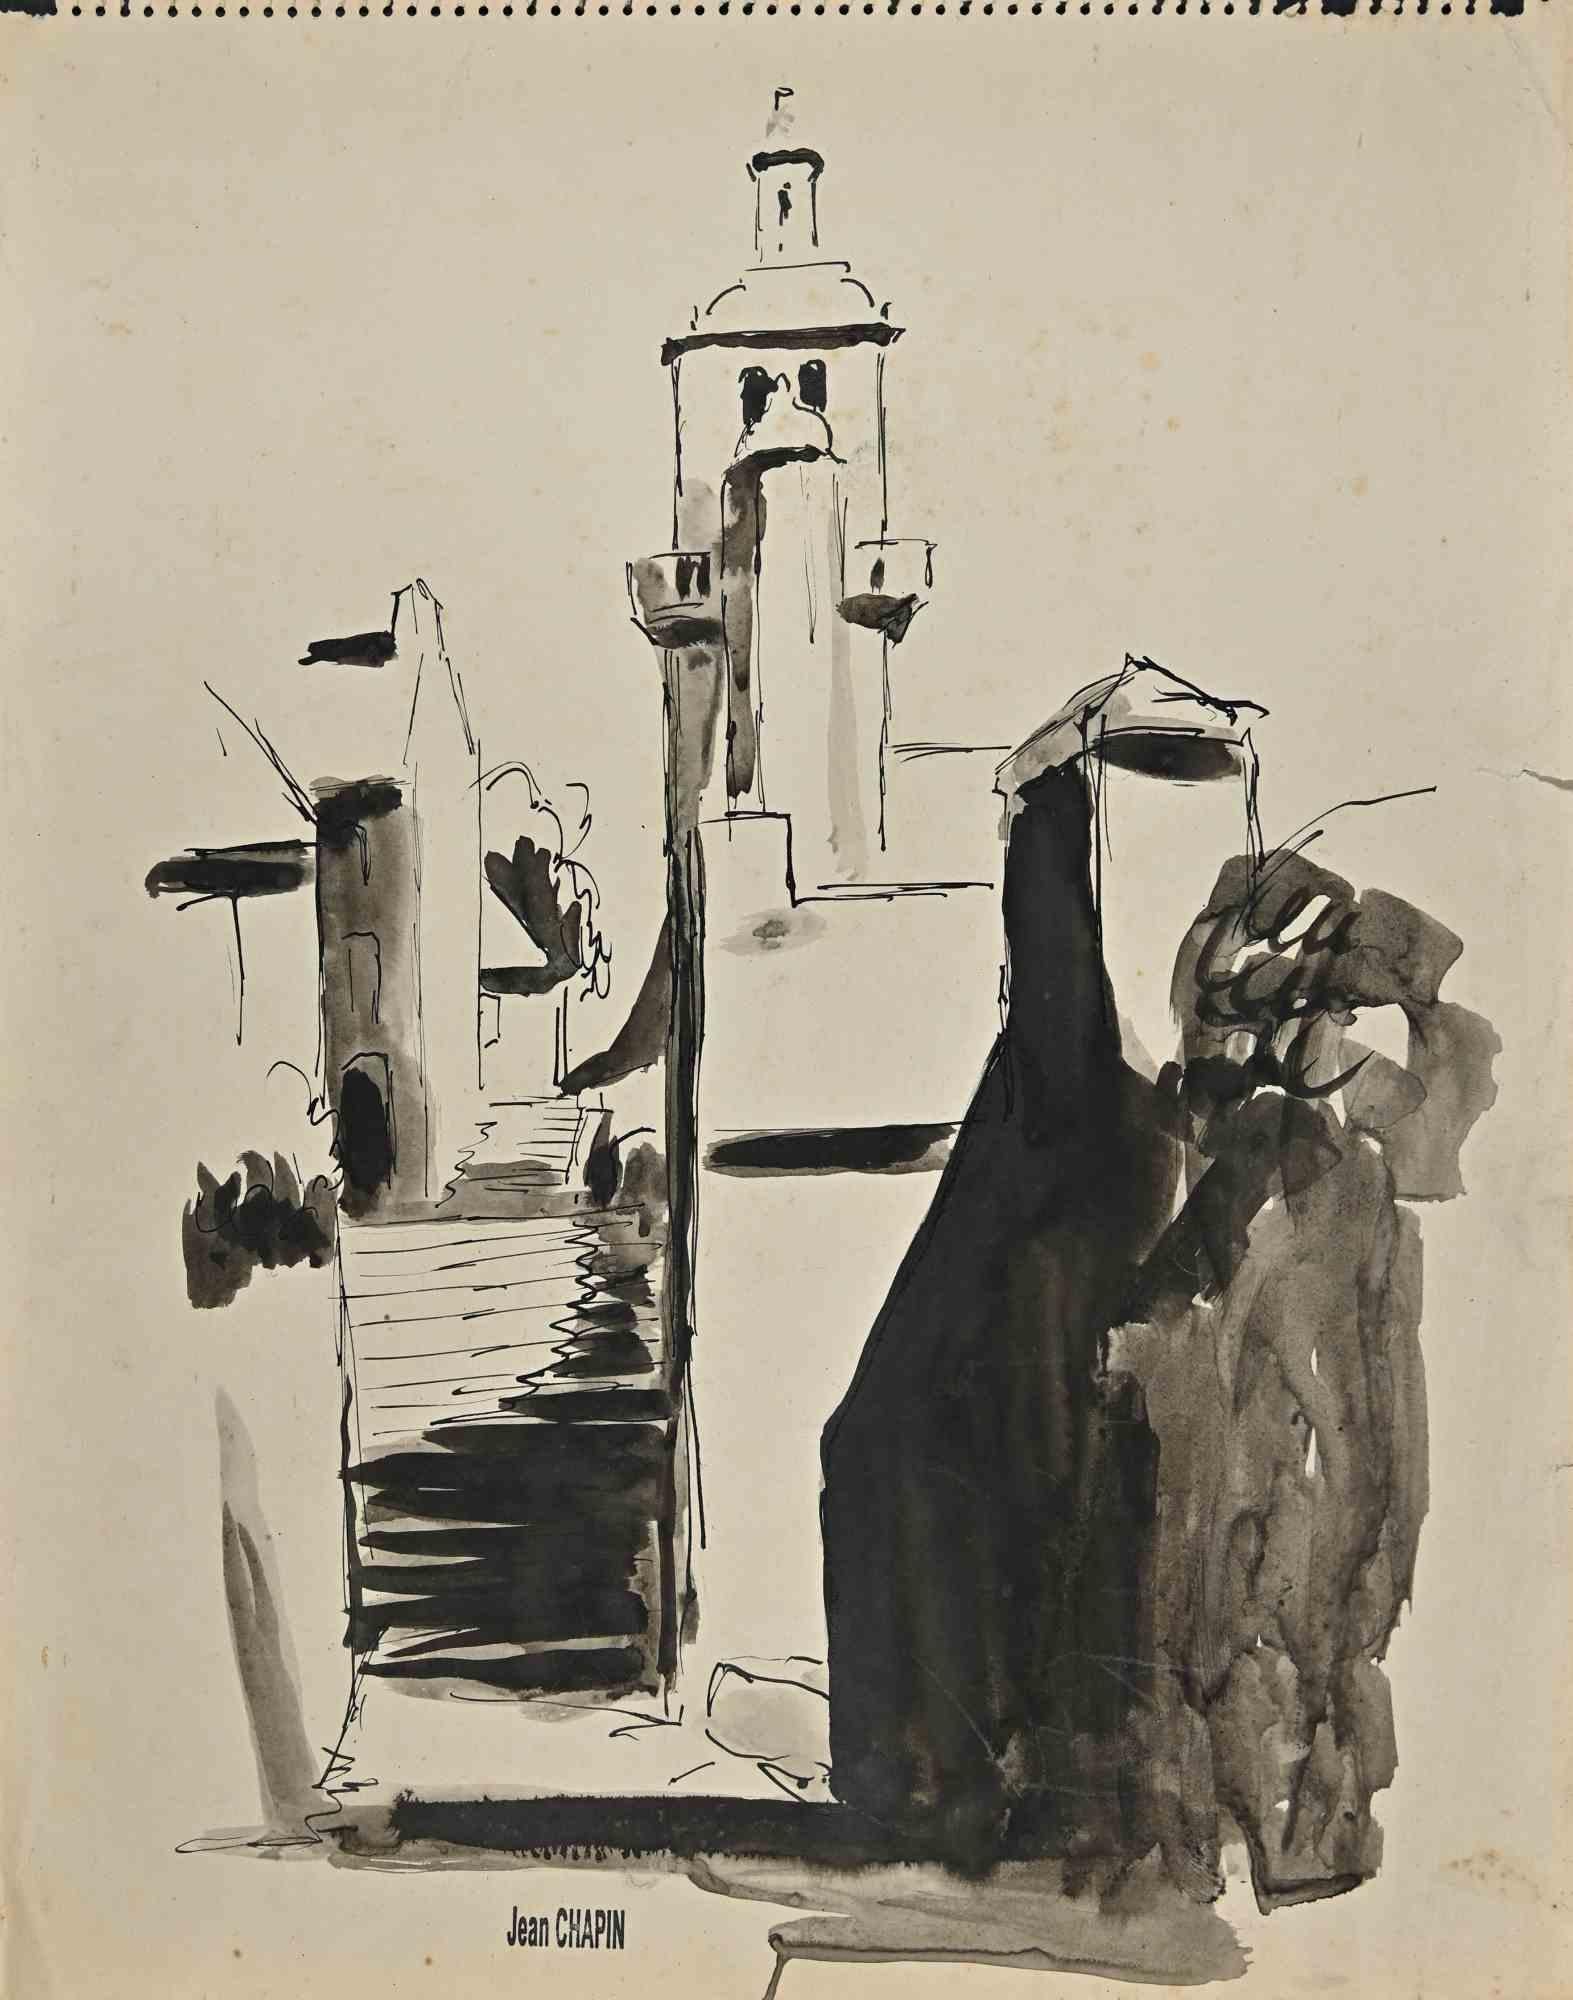 Pays arabe est une aquarelle réalisée par Jean Chapin dans les années 1950. 

42x33 cm, sans cadre.

Cachet de la signature sur le papier jauni.

Bon état, à l'exception d'une légère pliure.

 

Jean Chapin (Paris, 1896-1994), artiste français qui a